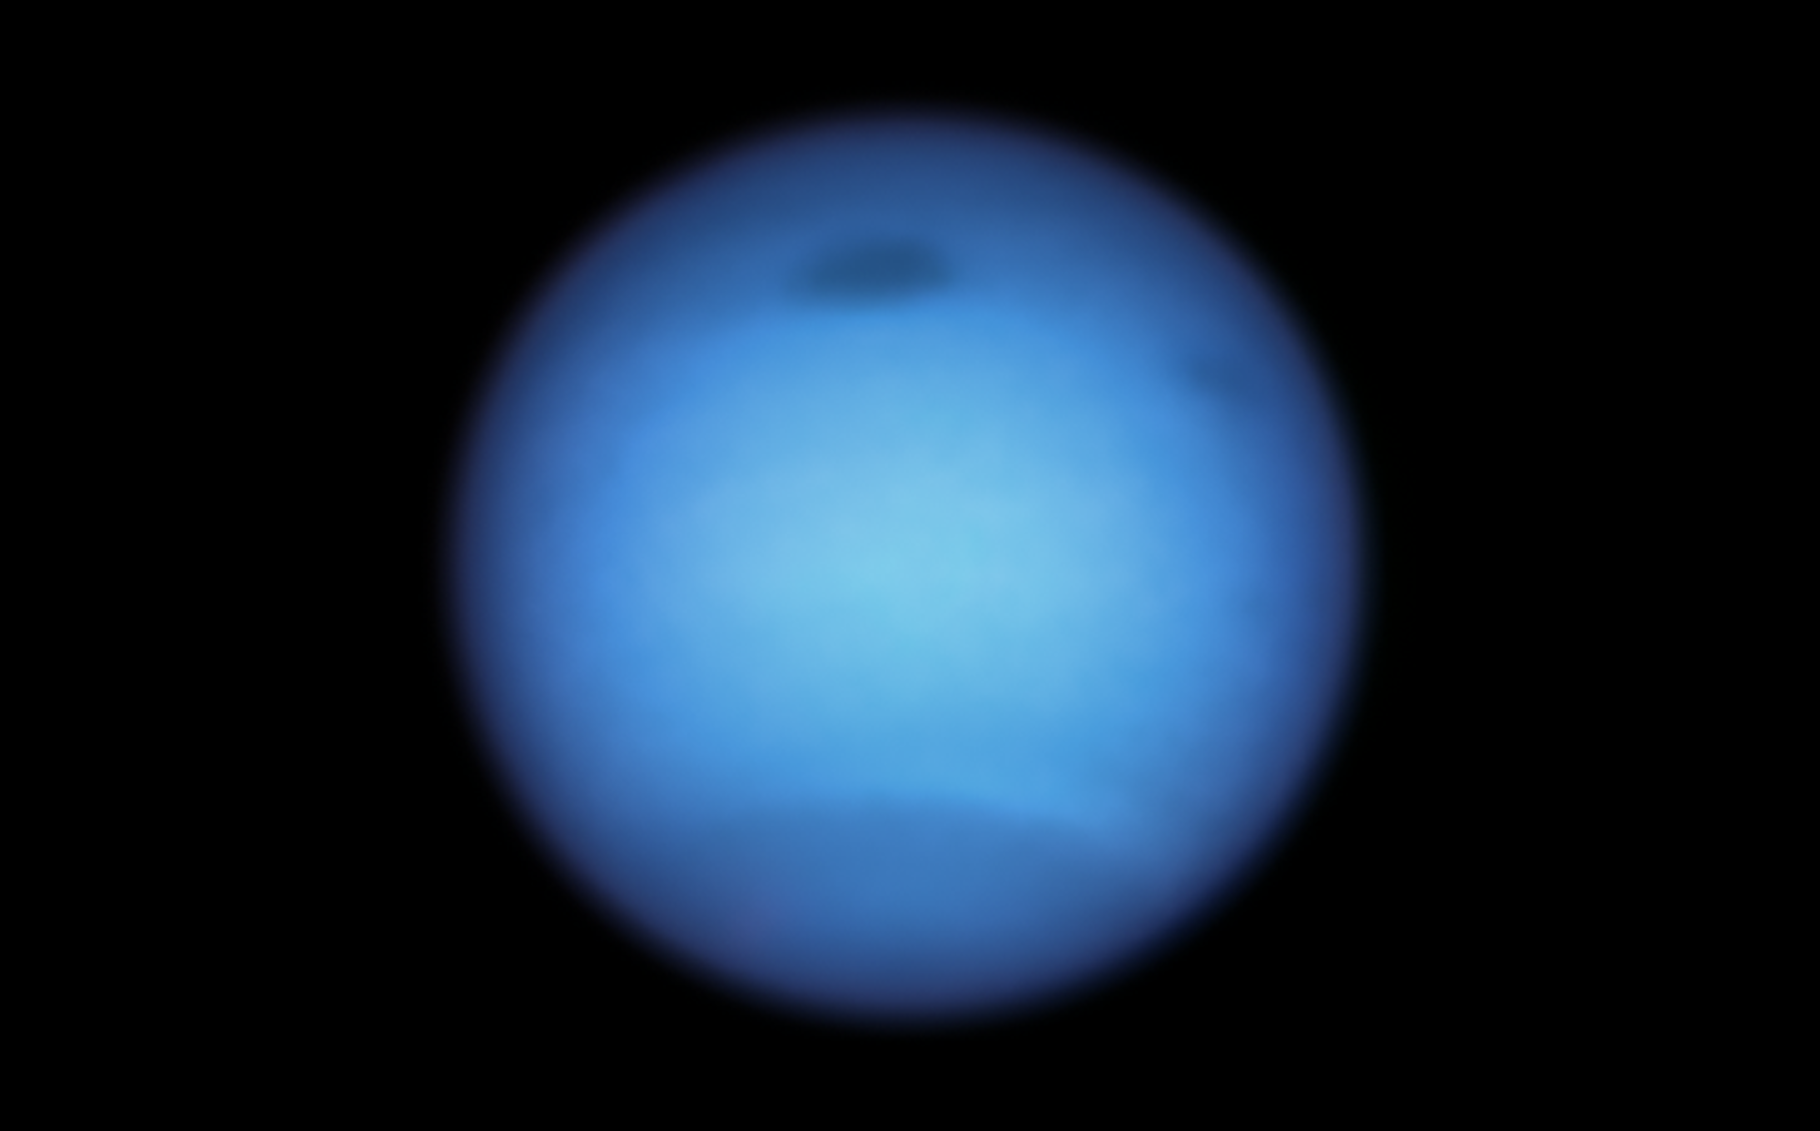 Dans l’atmosphère de Neptune, un vortex géant — en haut au centre de la planète sur cette image — se dirigeait tranquillement vers l’équateur lorsqu’il a soudainement fait demi-tour pour repartir vers le nord. © Nasa, ESA, STScI, M.H. Wong (Université de Californie, Berkeley), et L.A. Sromovsky et P.M. Fry (Université du Wisconsin-Madison)